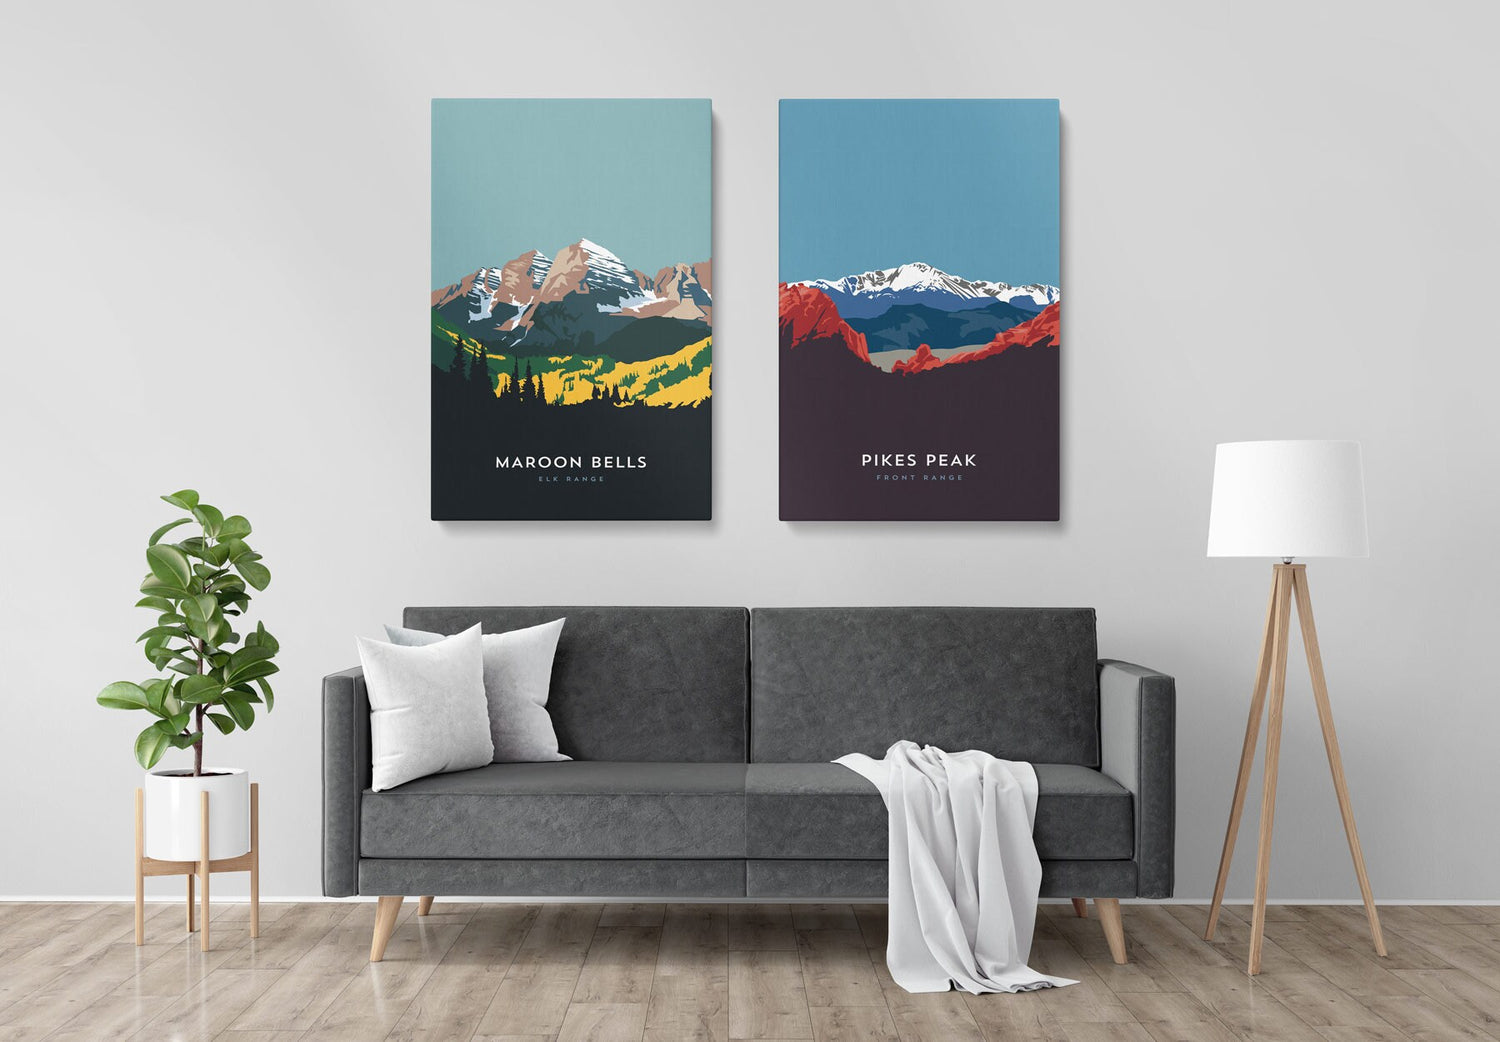 Mount Shavano Colorado 14er Canvas Print